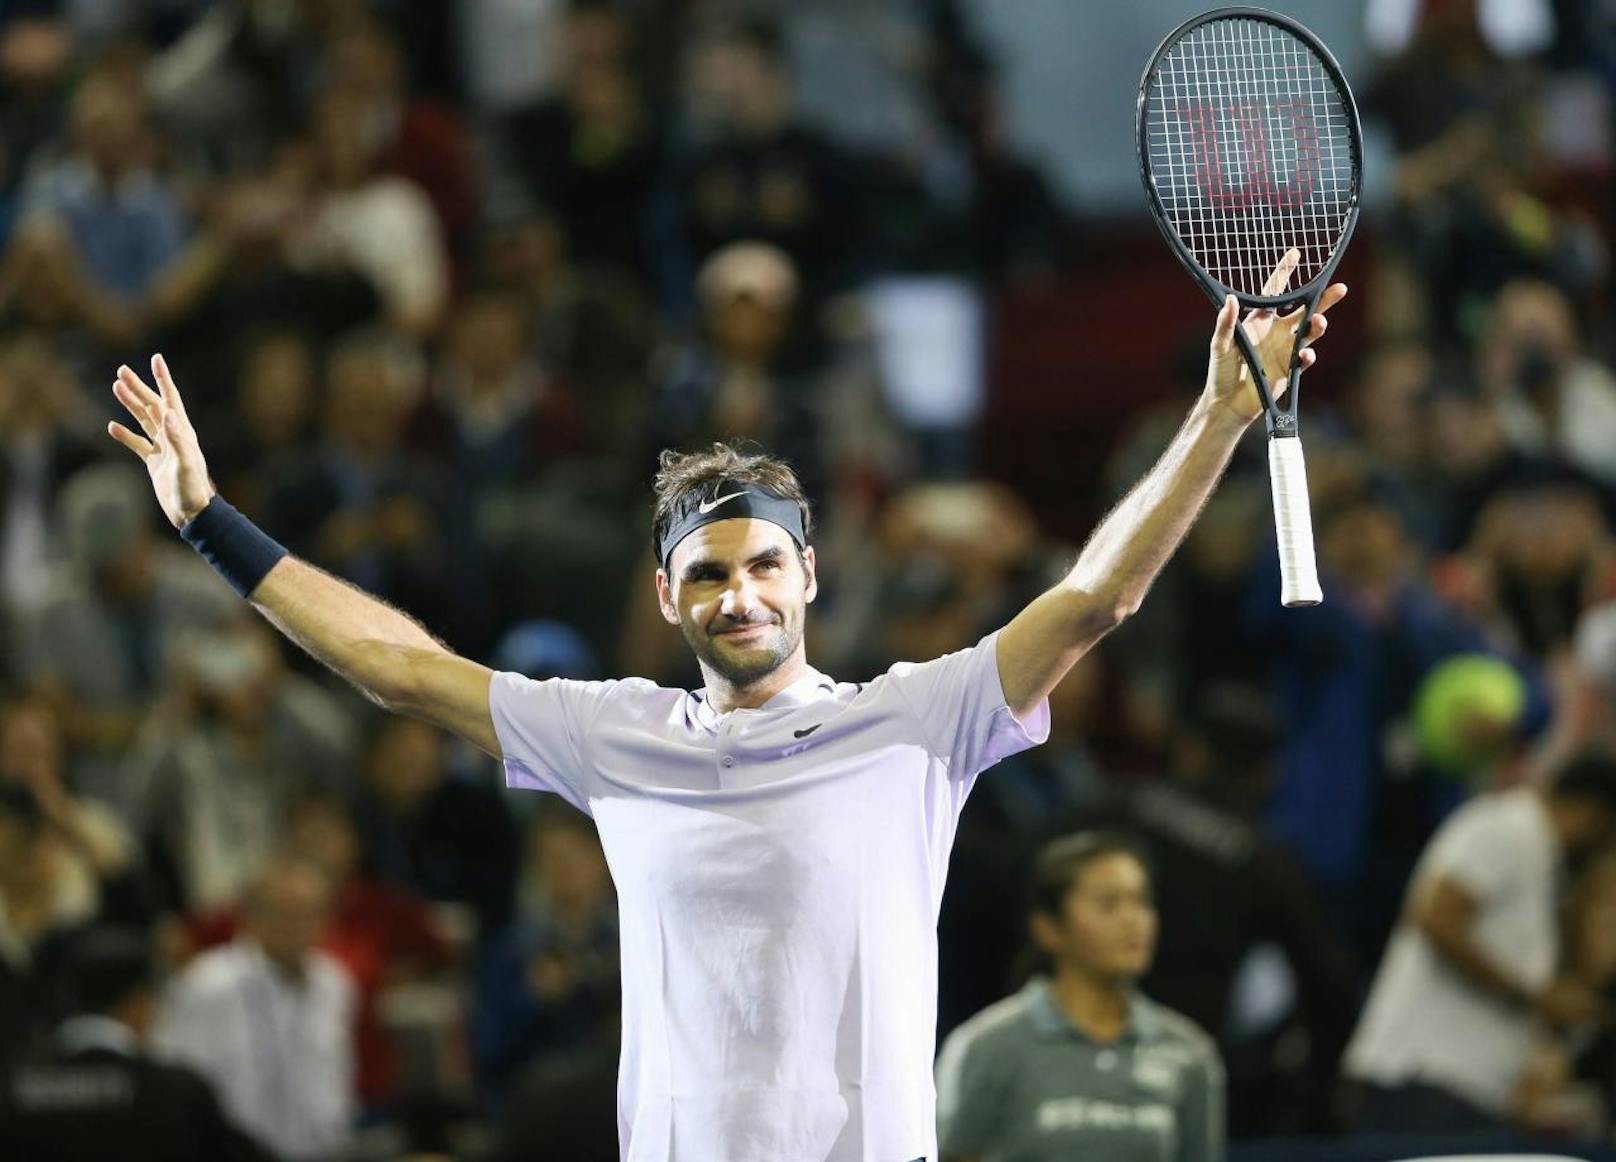 Platz 4: Roger Federer (Tennis) - 64 Millionen US-Dollar (6 Mio. Gage, 58 Mio. Werbeverträge)